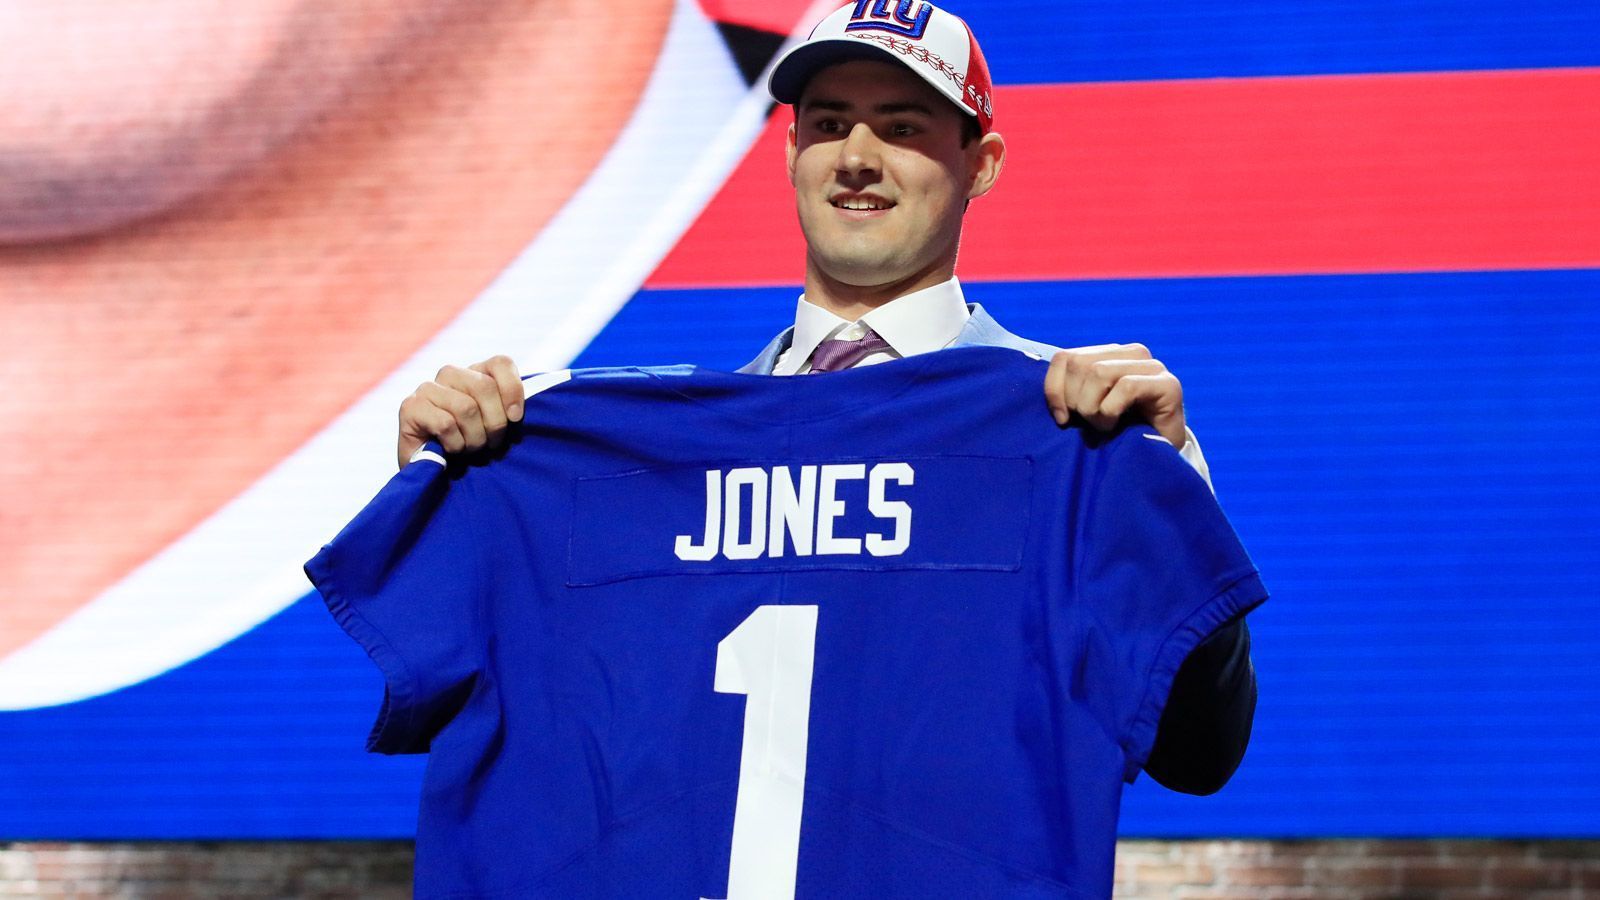 
                <strong>Draft Pick 6: New York Giants</strong><br>
                Spieler: Daniel JonesPosition: QuarterbackCollege: Duke
              